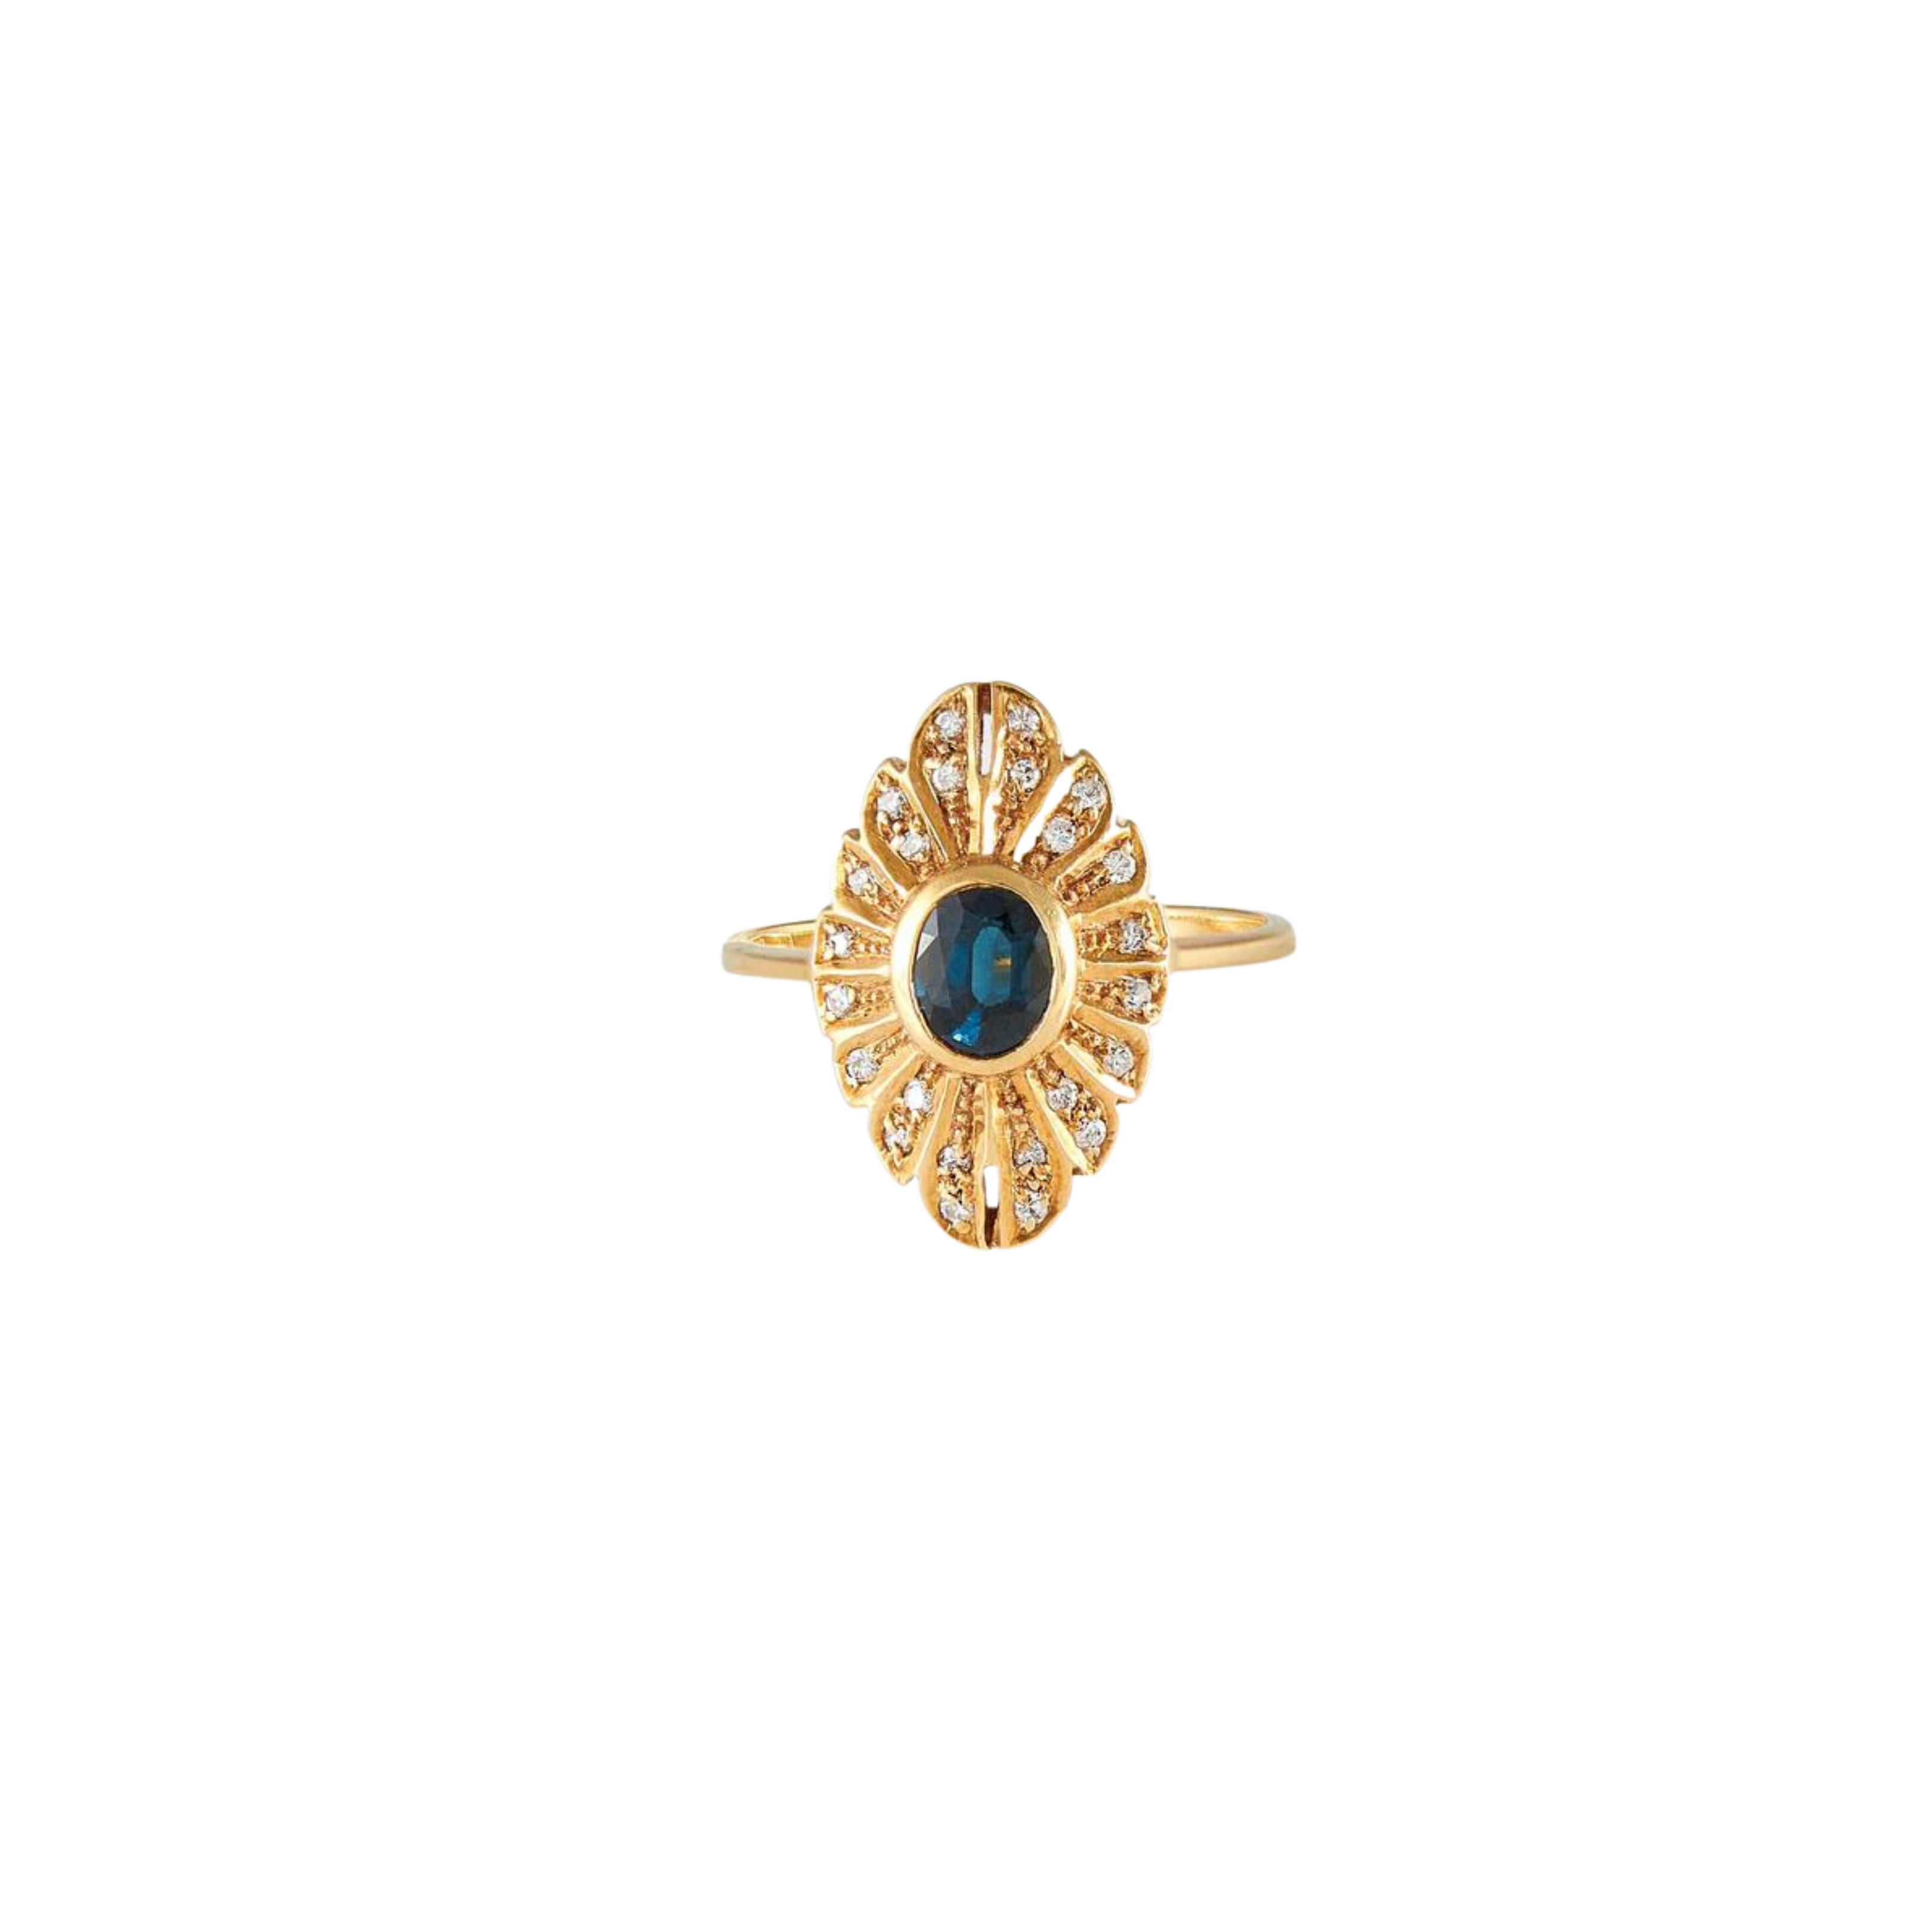 Cadeau : Bague ancienne début 20ème siècle, anneau double tressé d'or jaune serti d'un cabochon de corail méditerranéen